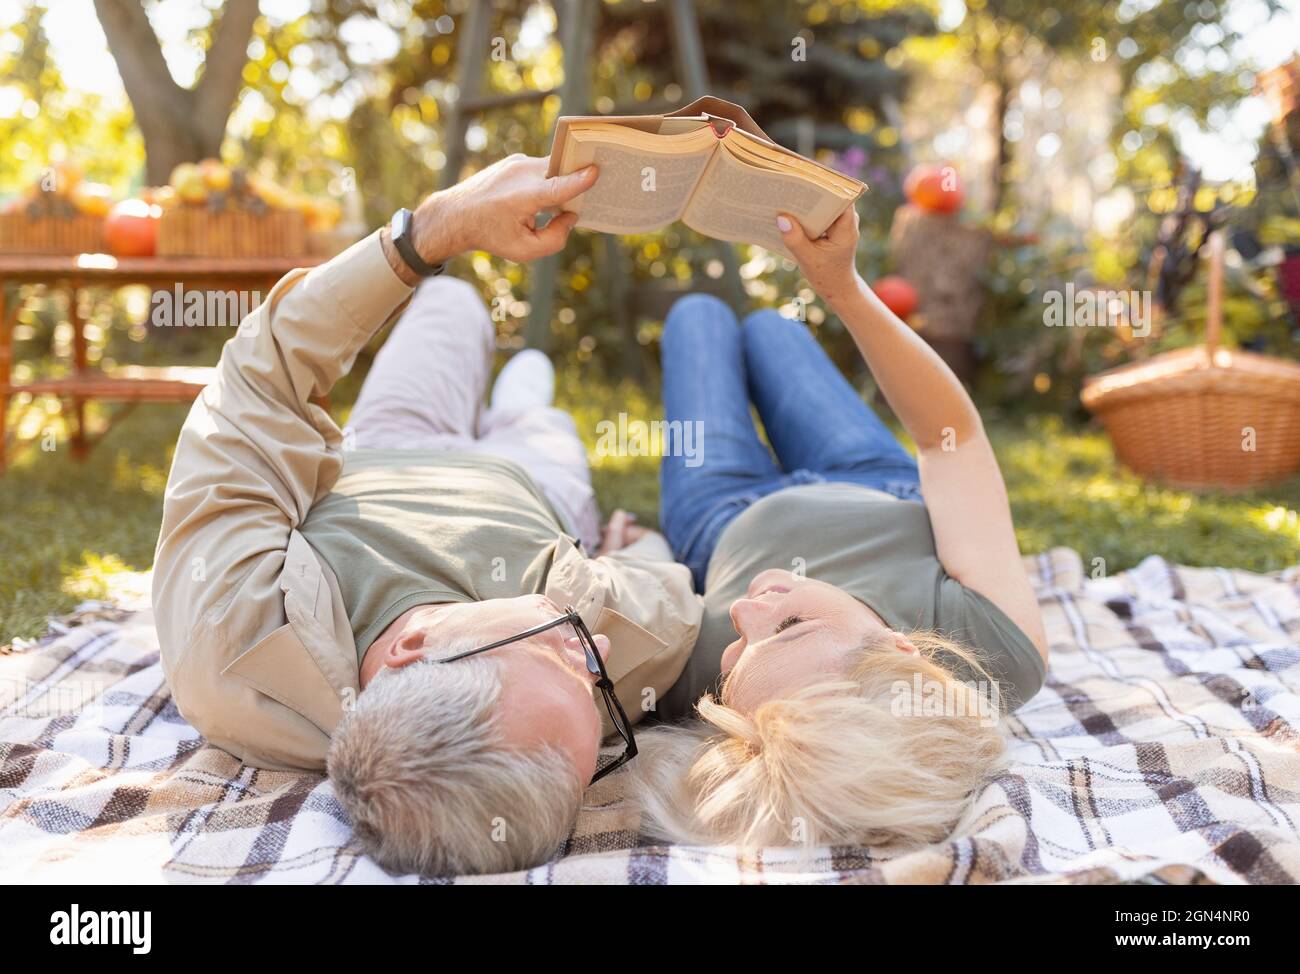 Coppia sposata libro di lettura insieme mentre si trova su coperta da picnic in giardino, trascorrere il tempo libero all'aperto Foto Stock